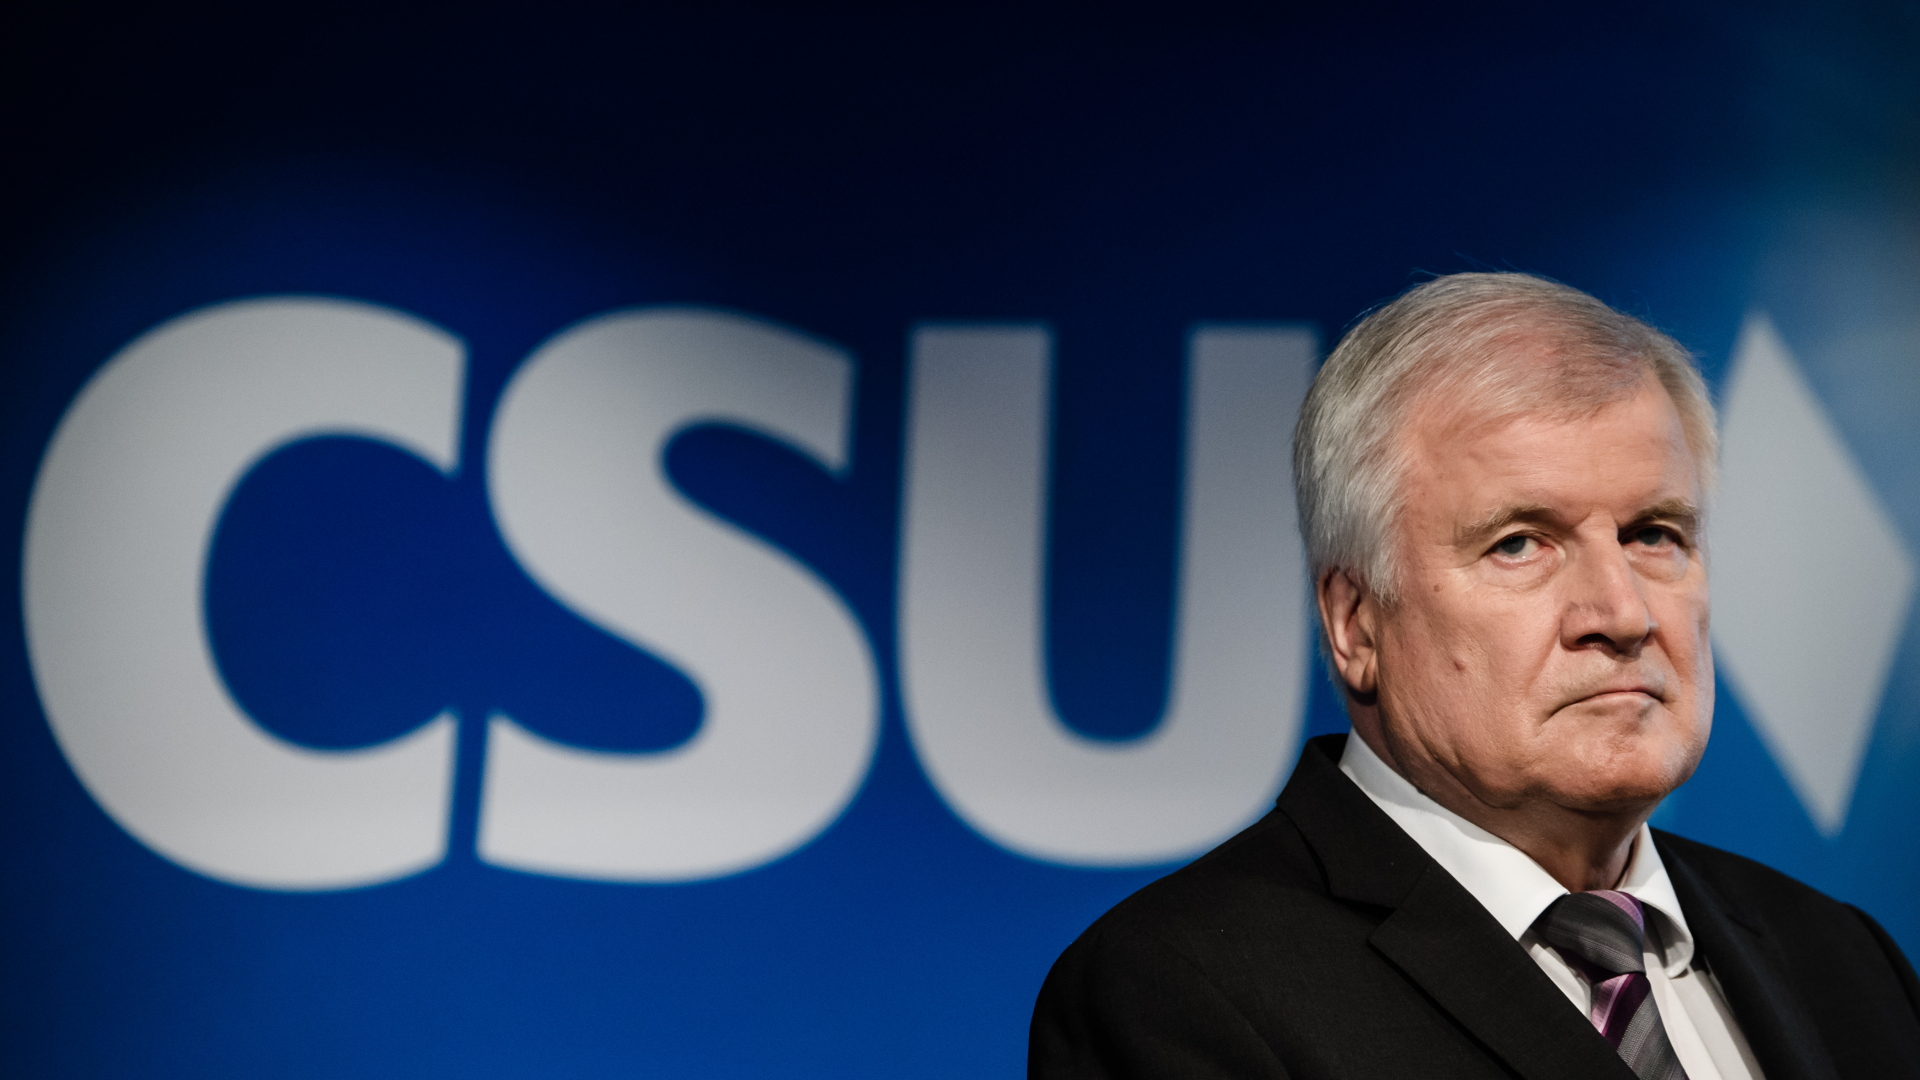 CSU-Vorsitzender Horst Seehofer vor einem CSU-Schriftzug | Bildquelle: CLEMENS BILAN/EPA-EFE/REX/Shutte